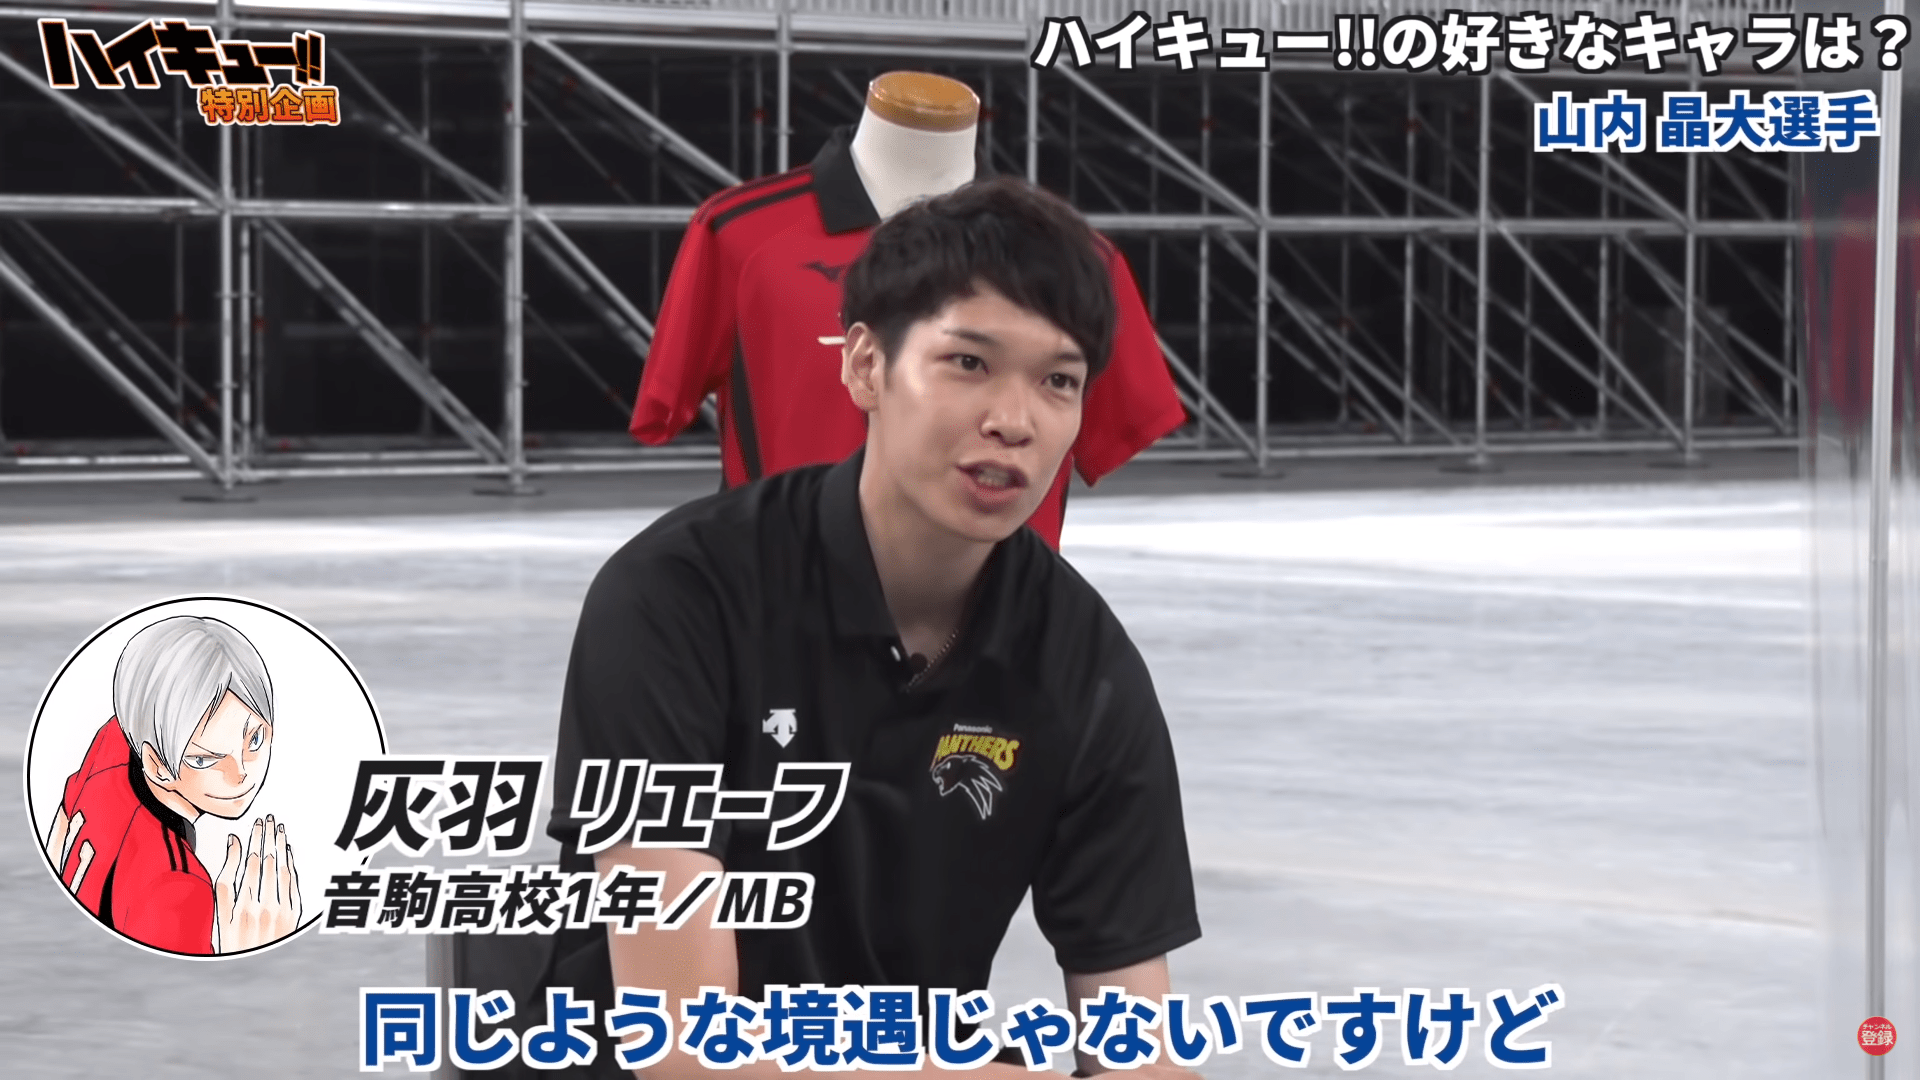 japanese volleyball team - akihiro yamauchi's bias